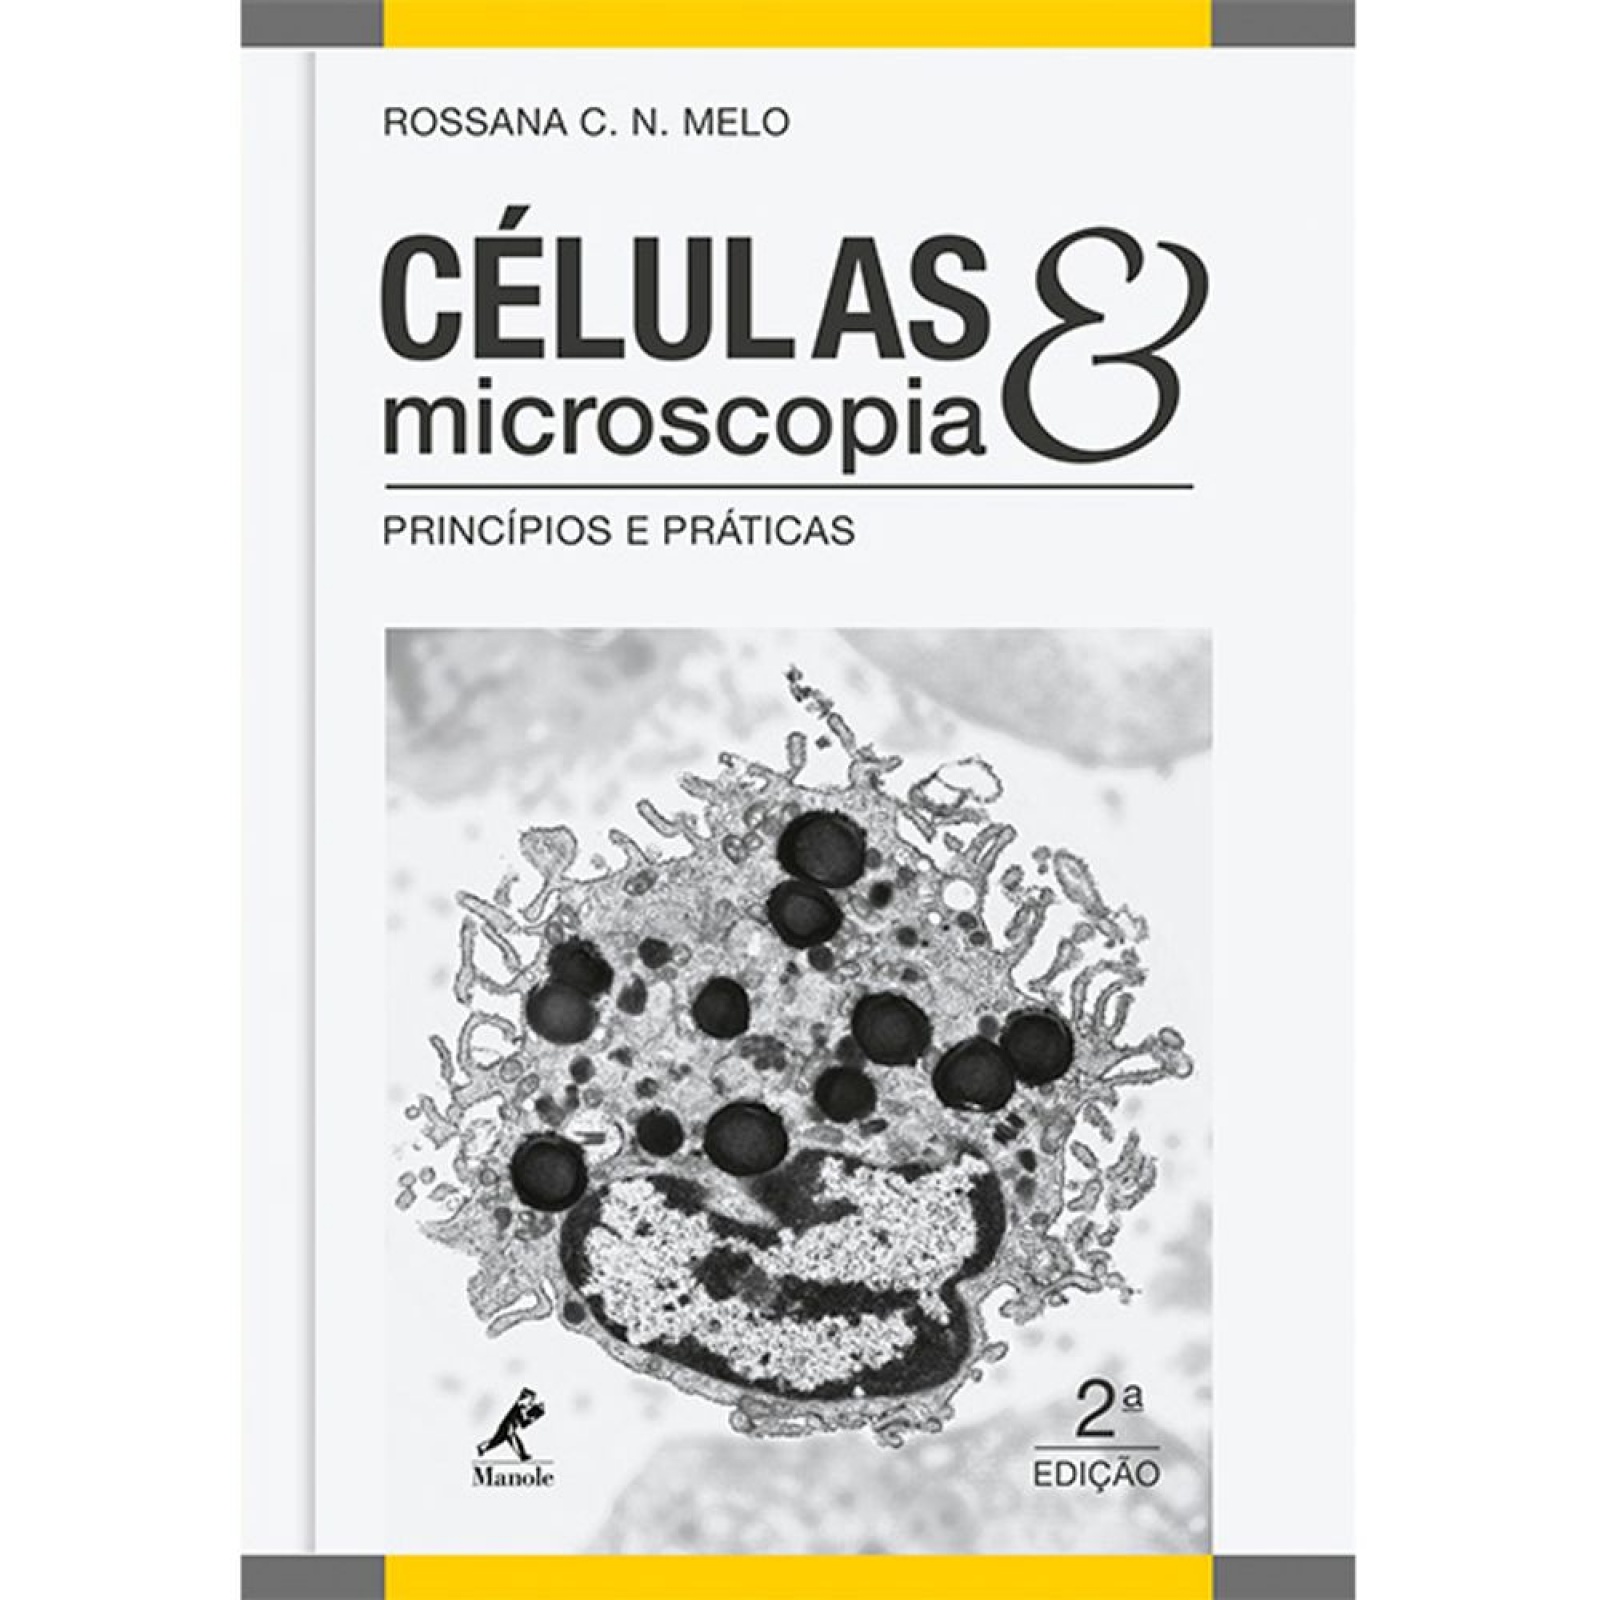 Células & Microscopia - Princípios E Práticas - 2ª Edição